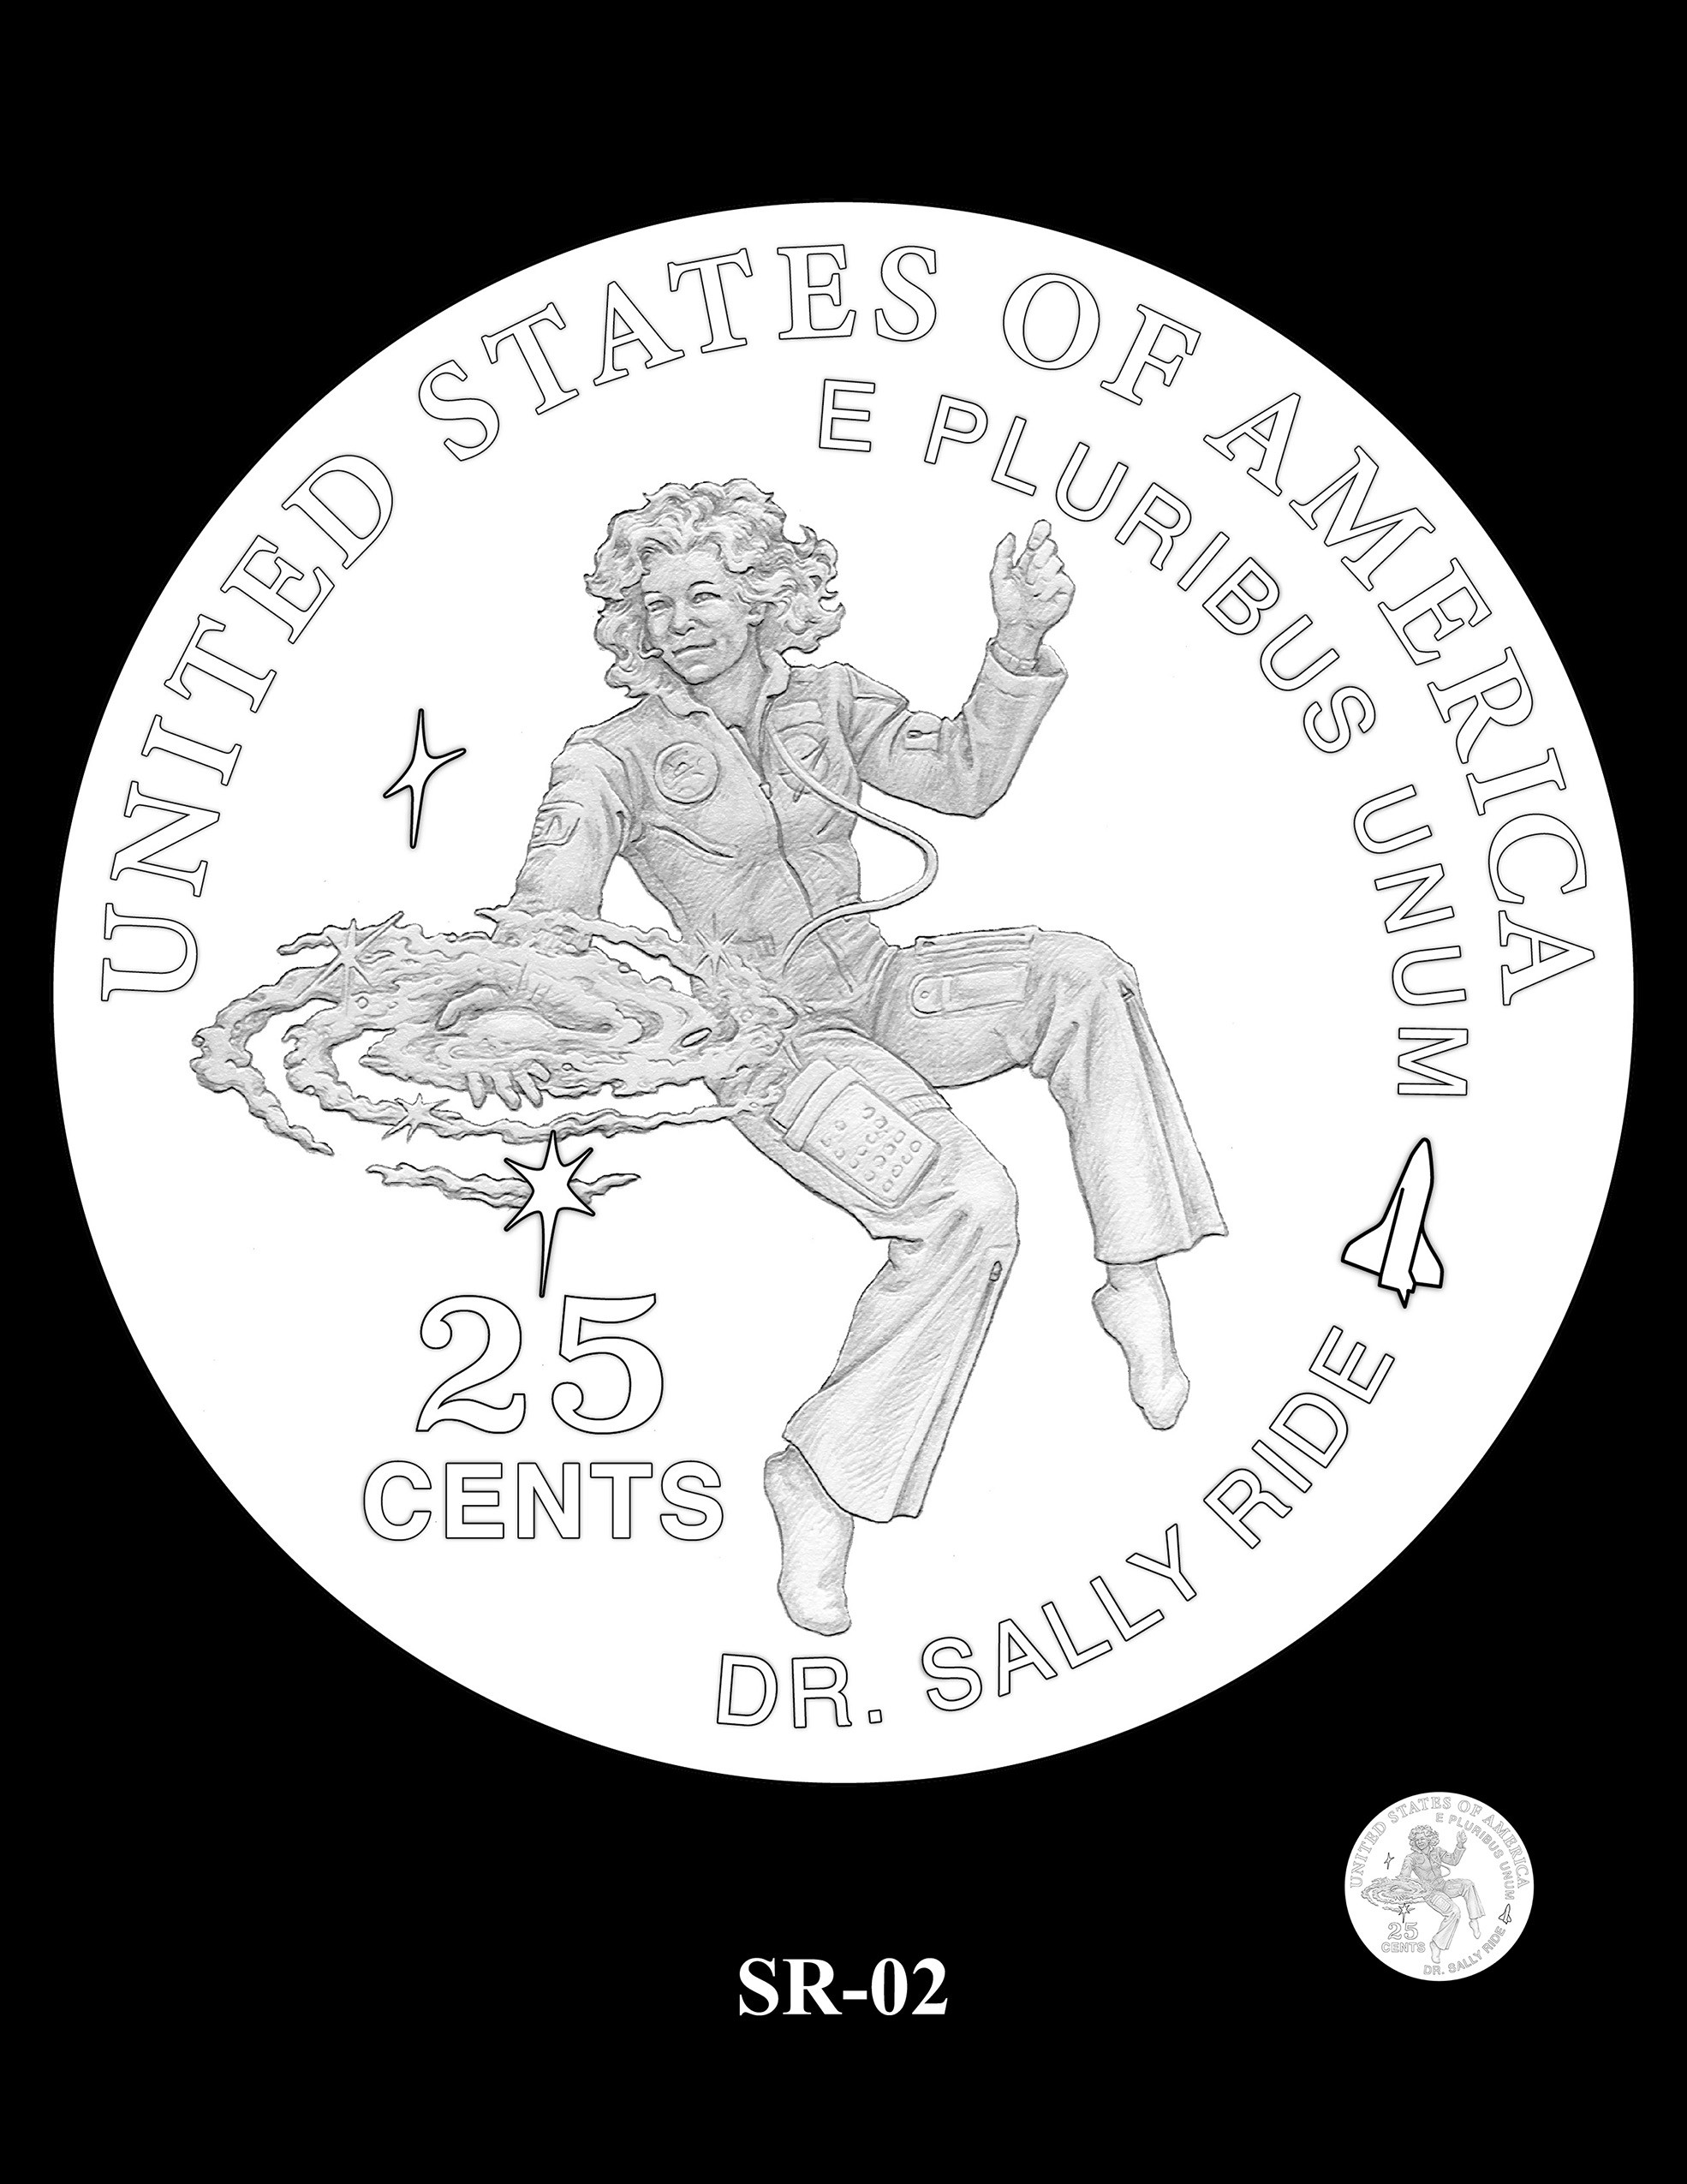 Outro design candidato a estampar a moeda da astronauta Sally Ride, a primeira norte-americana a viajar ao espaço. (Foto: U.S Mint)